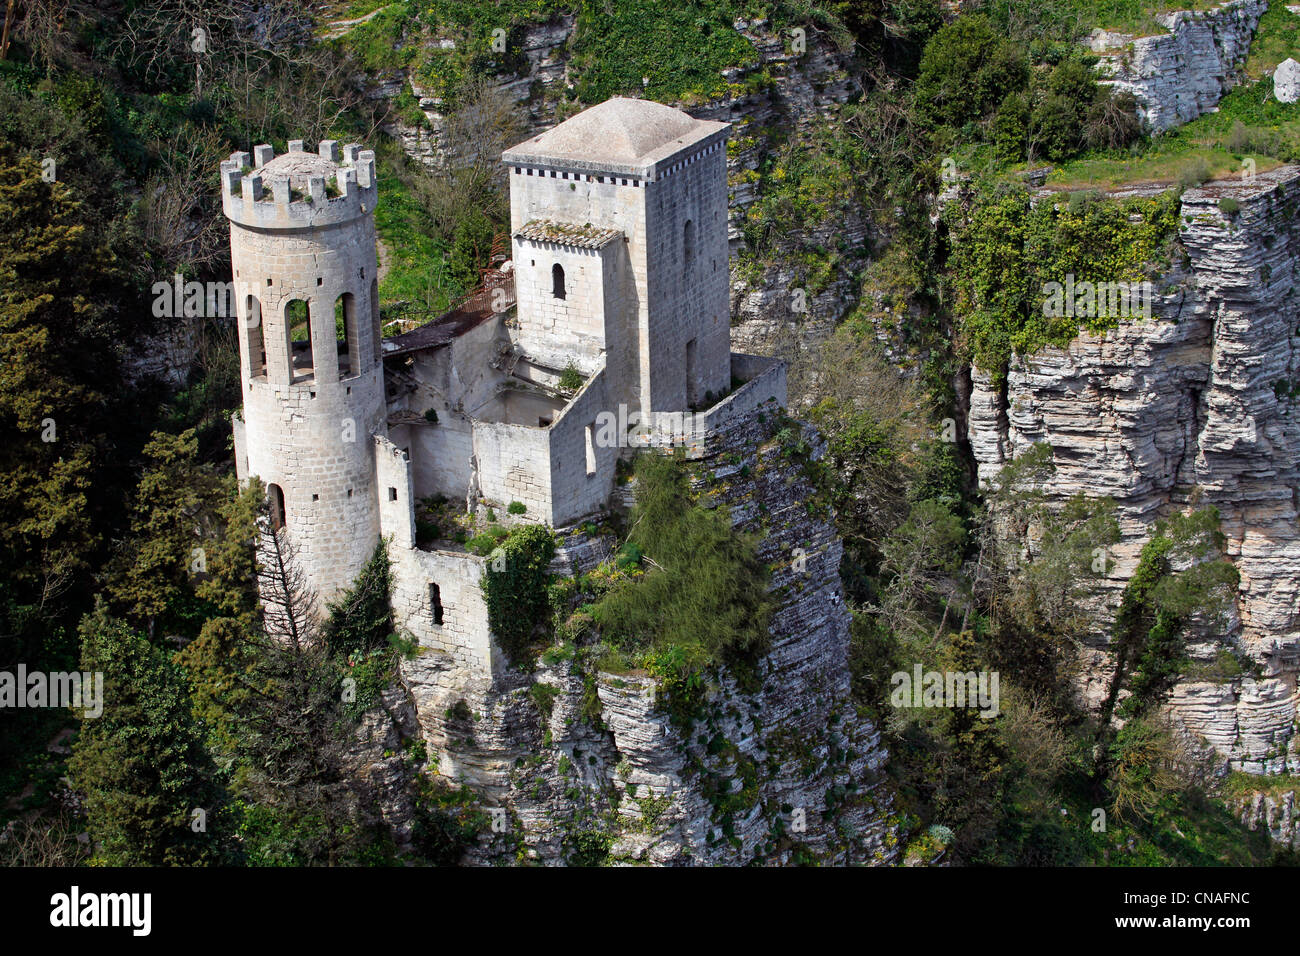 Toretta di Pepoli, the Pepoli Tower castle in Erice, Sicily, Italy Stock Photo